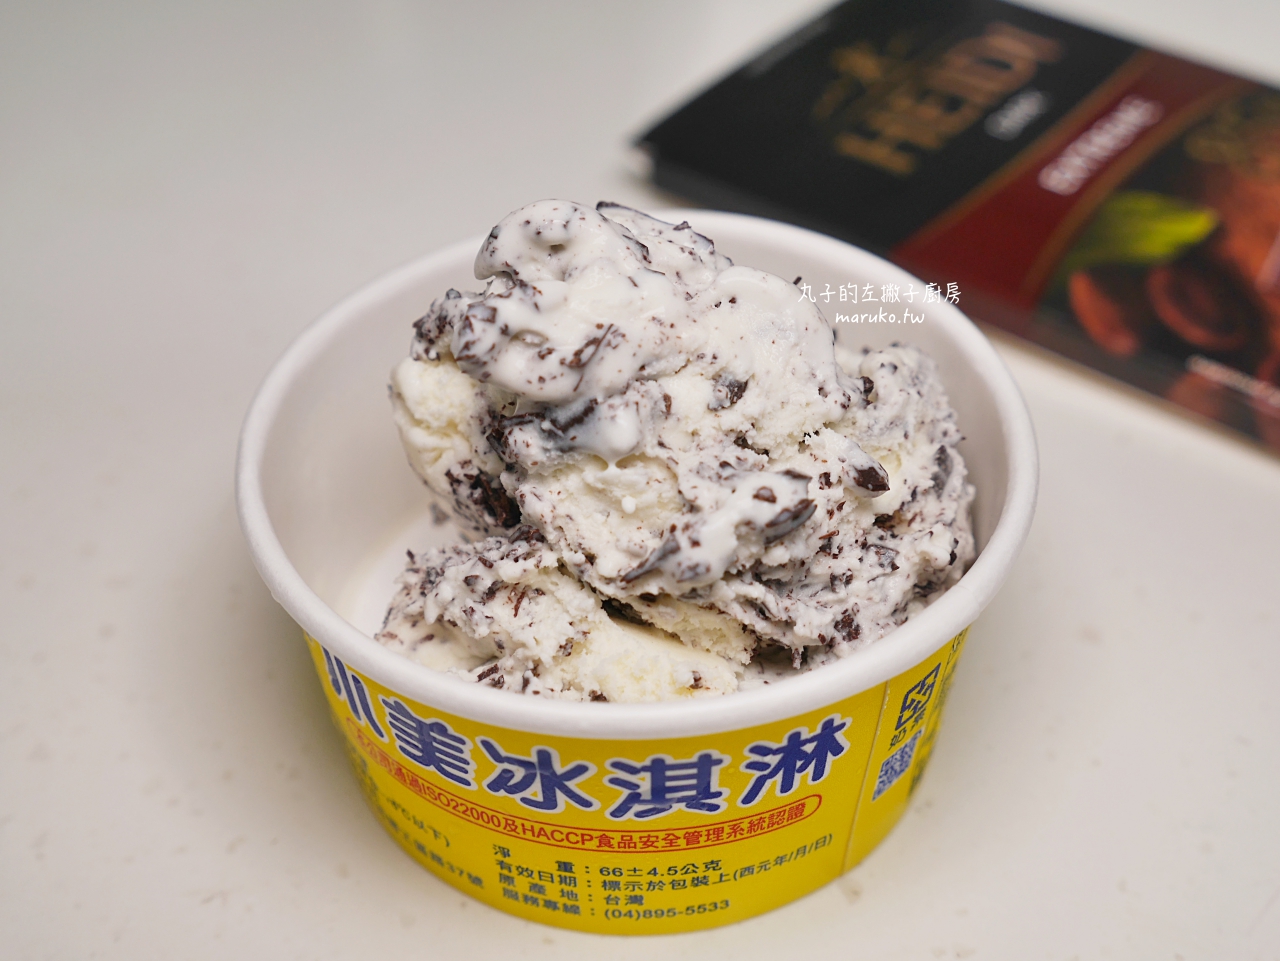 【食譜】OREO冰淇淋 5分鐘就能完成的簡單DIY甜點 @Maruko與美食有個約會